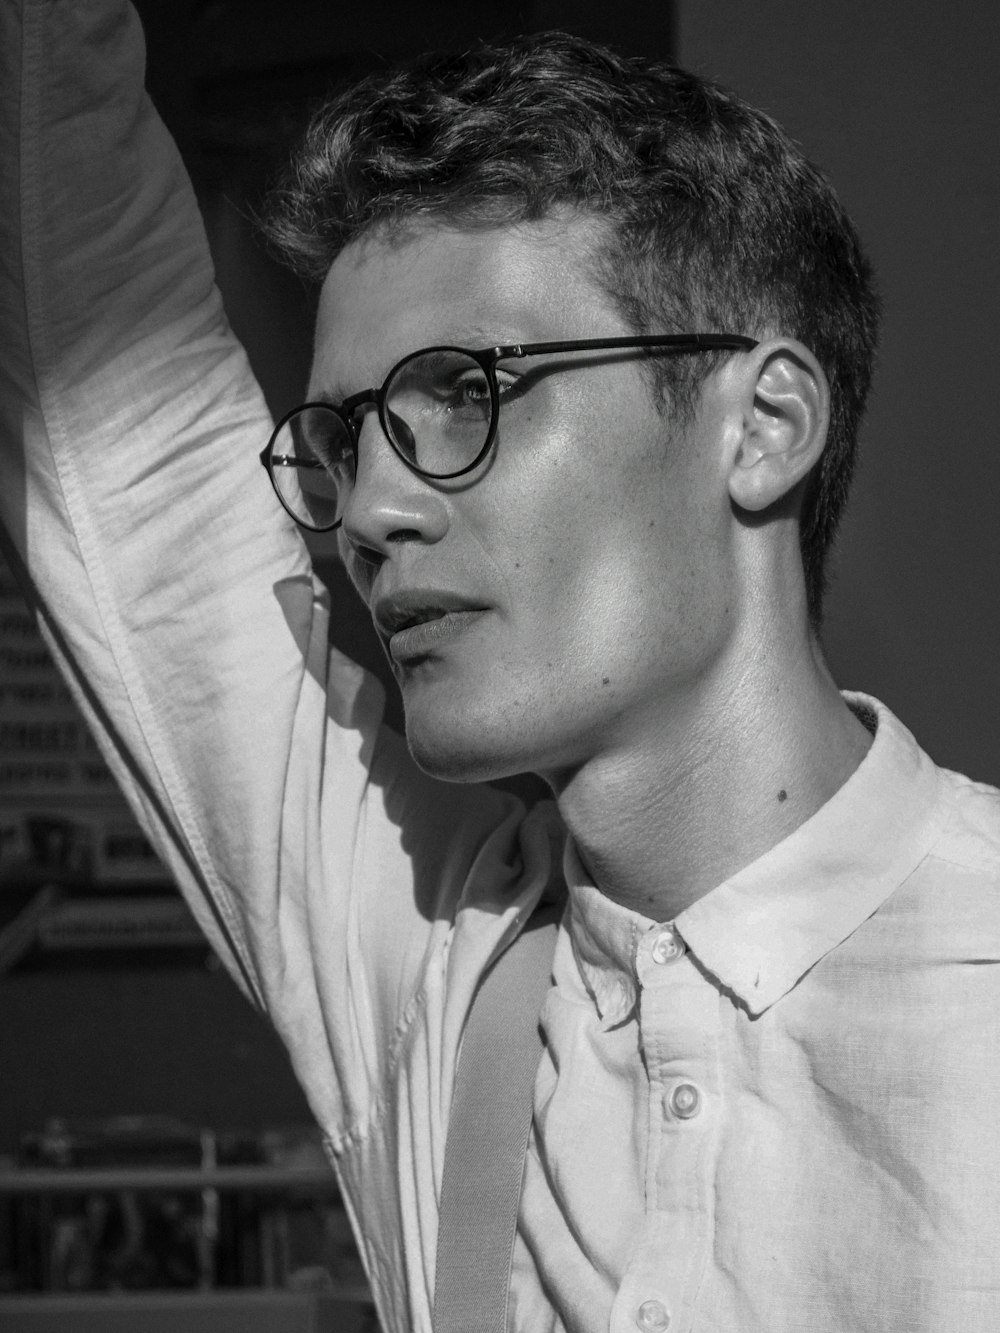 Un homme portant des lunettes et une chemise blanche